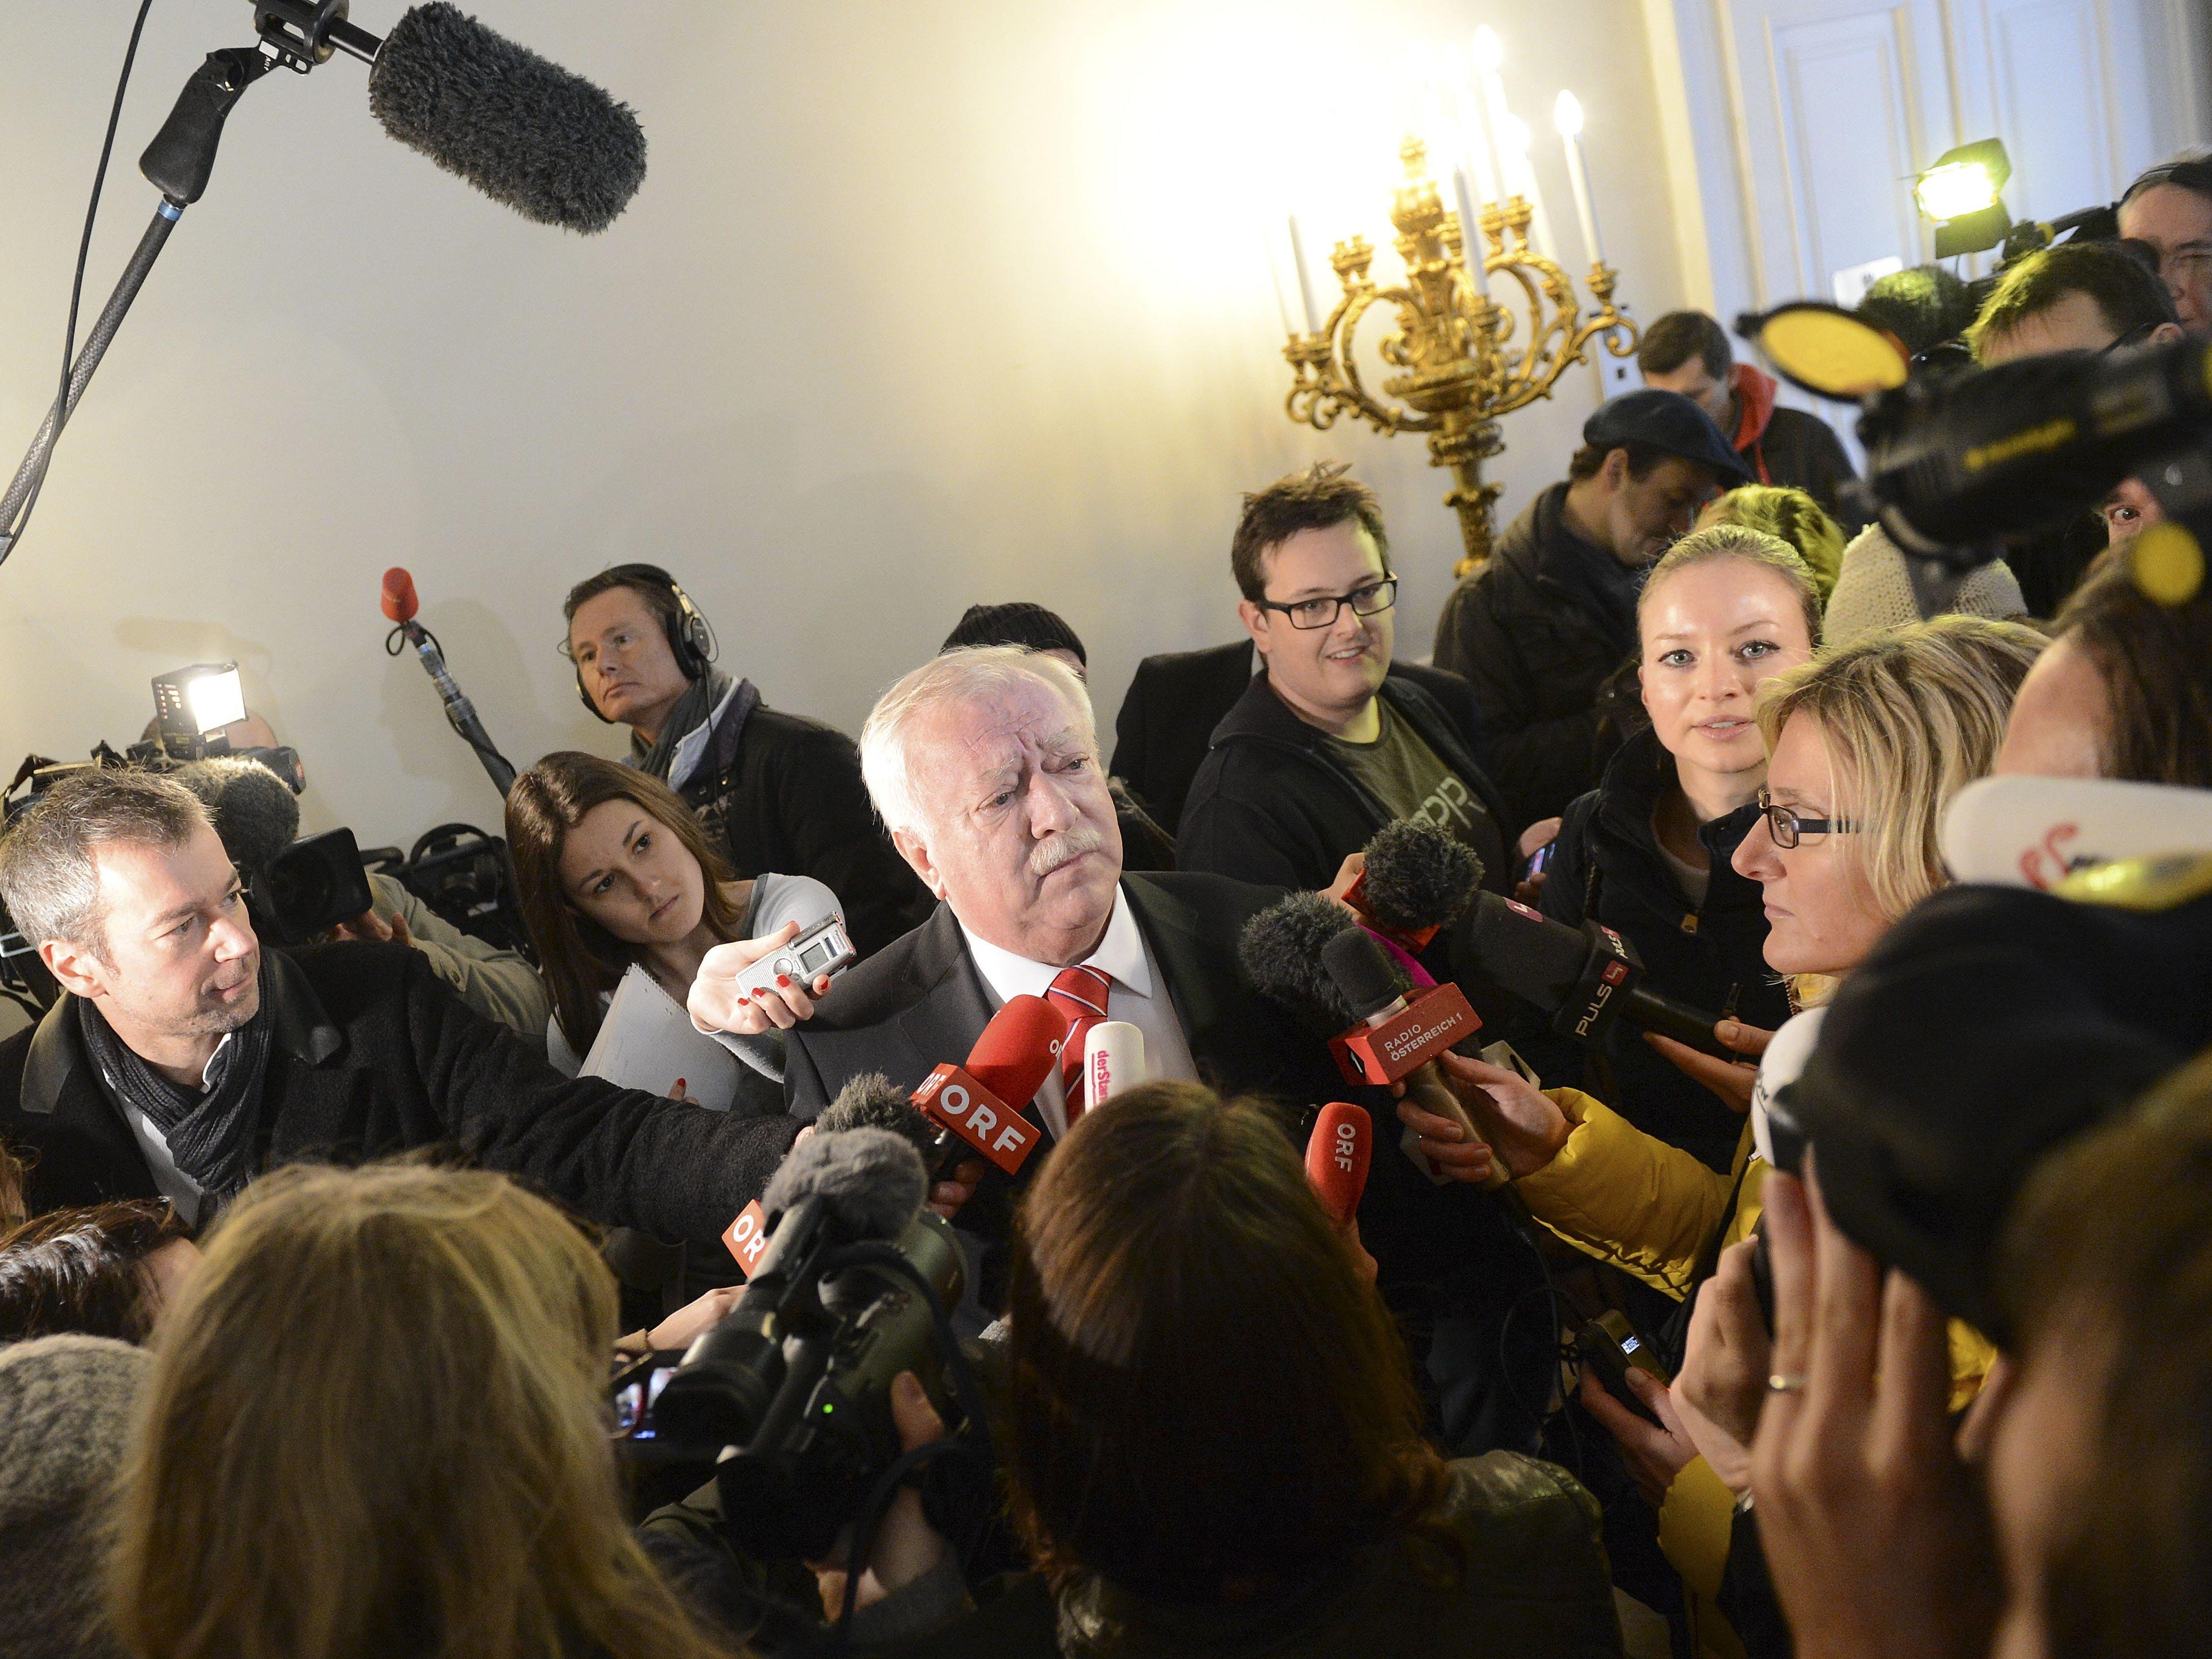 SPÖ vor Treffen mit Landeshauptleuten für ÖIAG neu, aber gegen OMV-Verkauf